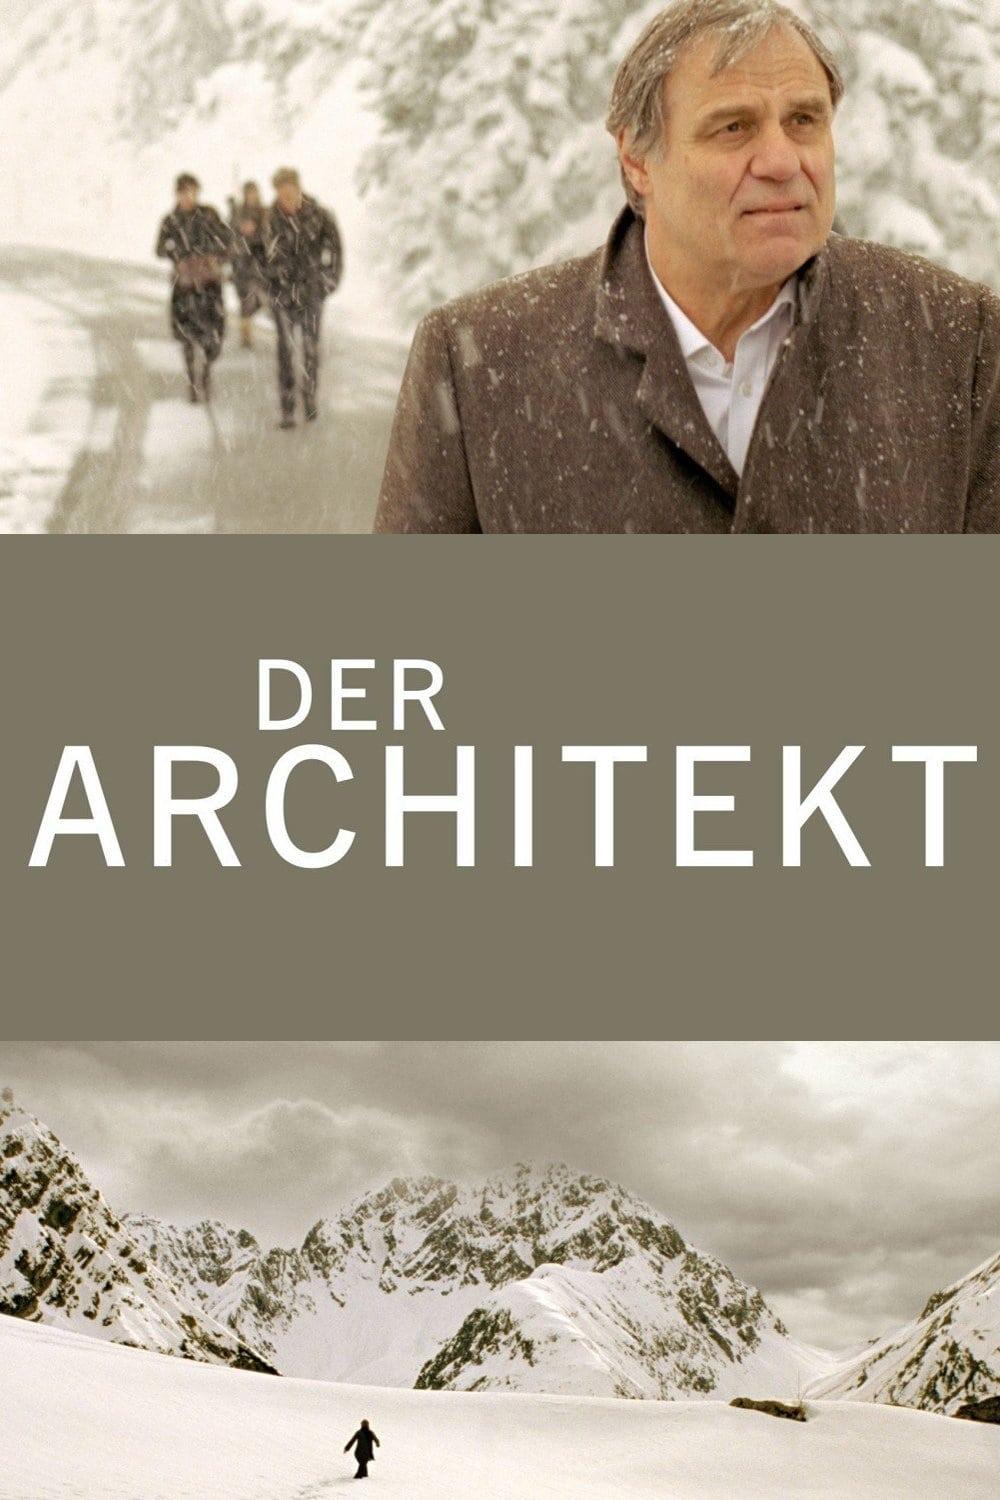 Der Architekt poster